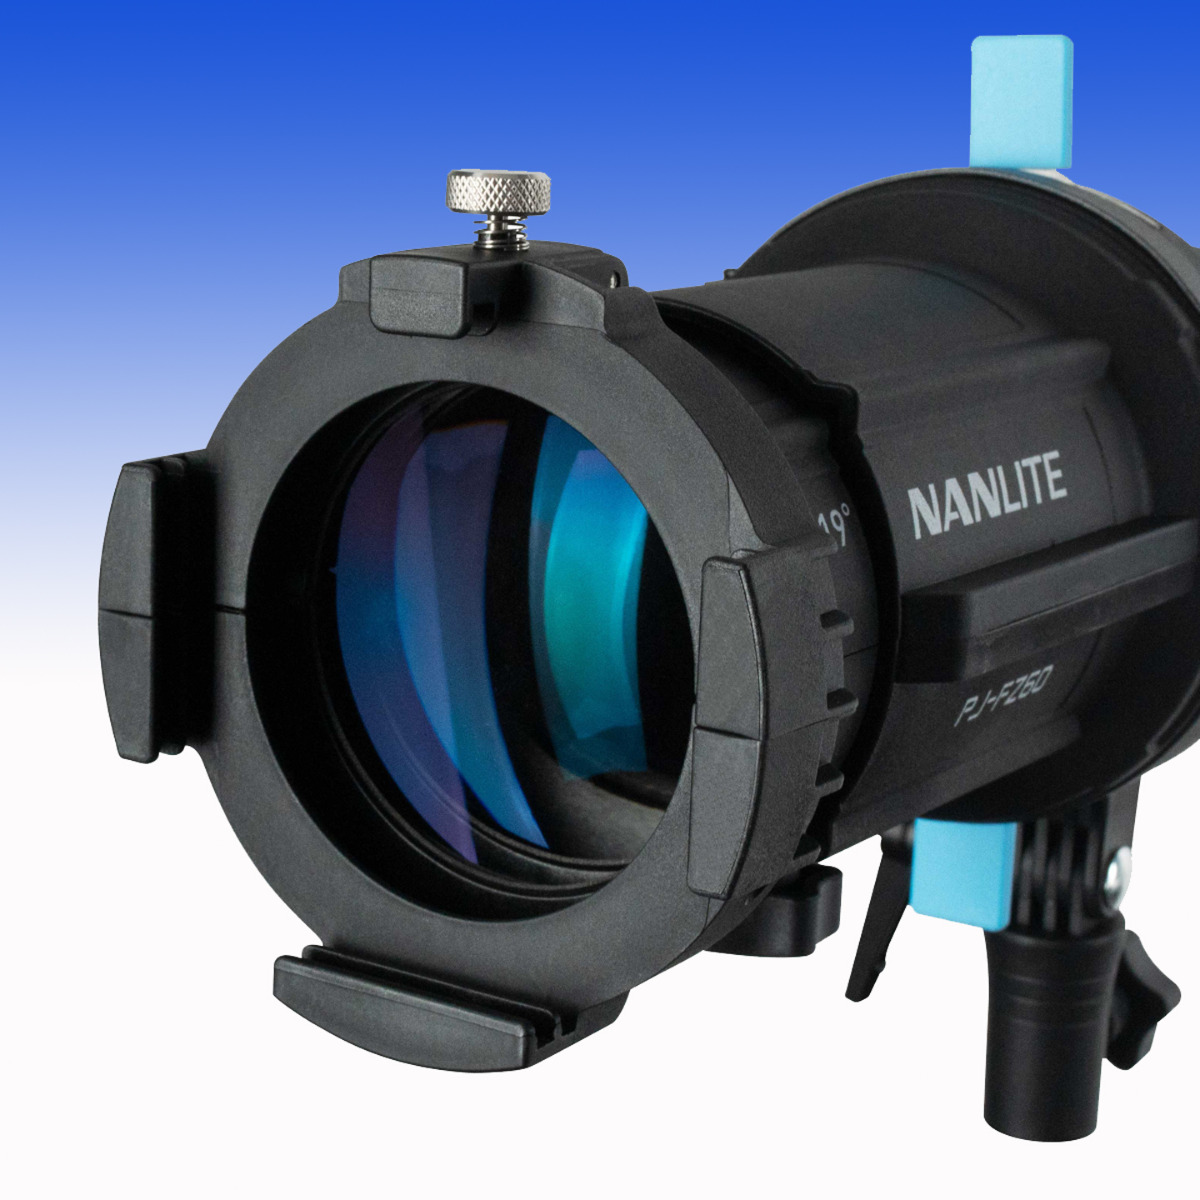 36° Linse für den Nanlite Projektionsvorsatz NL-PJ-FZ60 (NL-PJ-FZ60-L36)